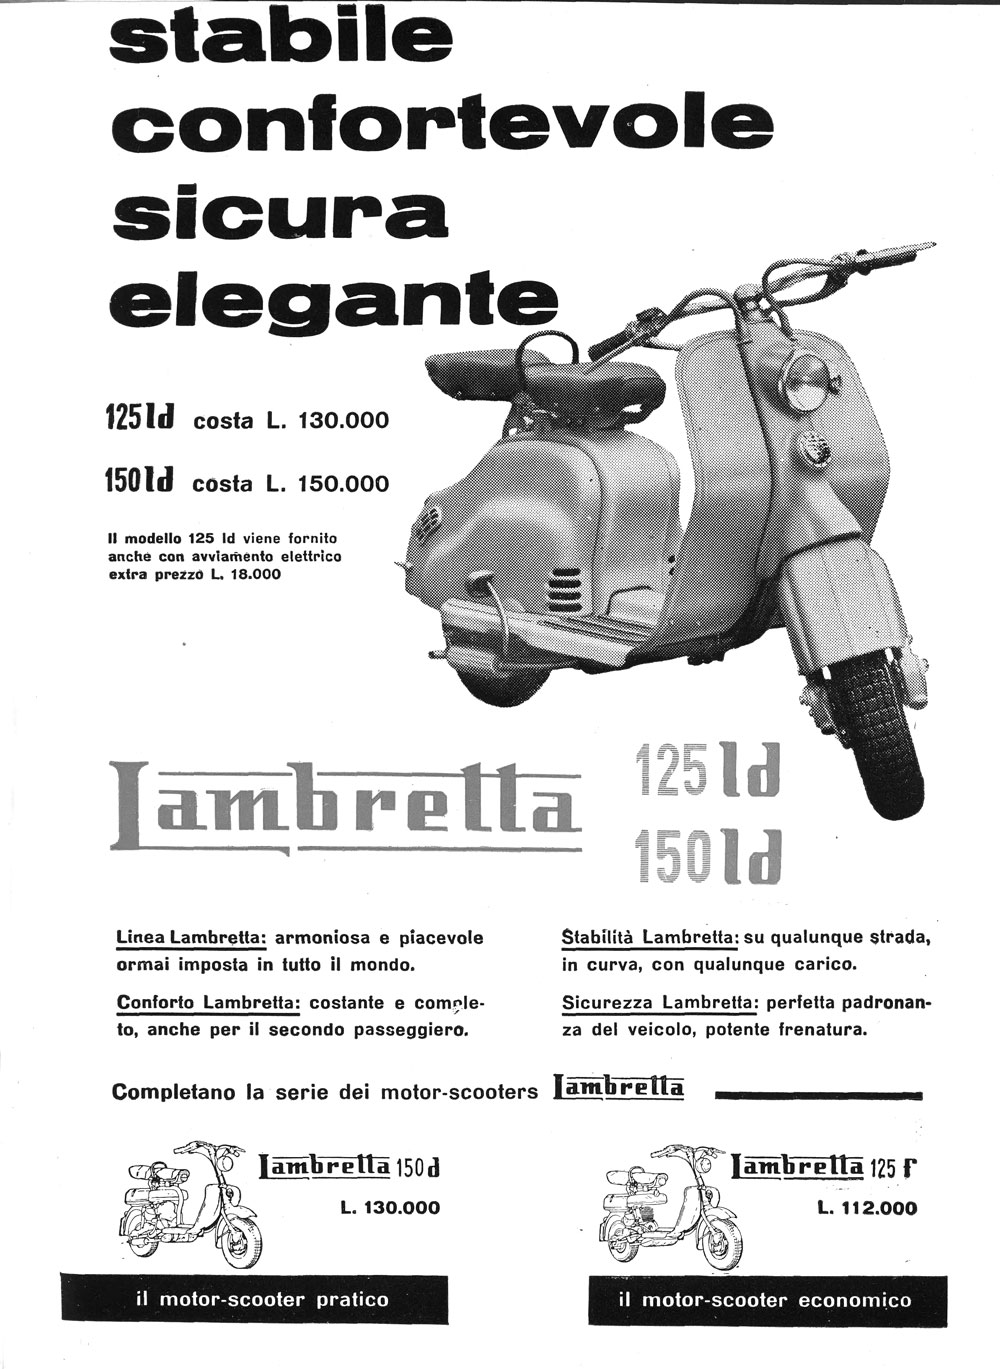 Pubblicità della Lambretta su “Via” (1956), rivista edita dall’Automobile Club di Milano (fonte: ACI)